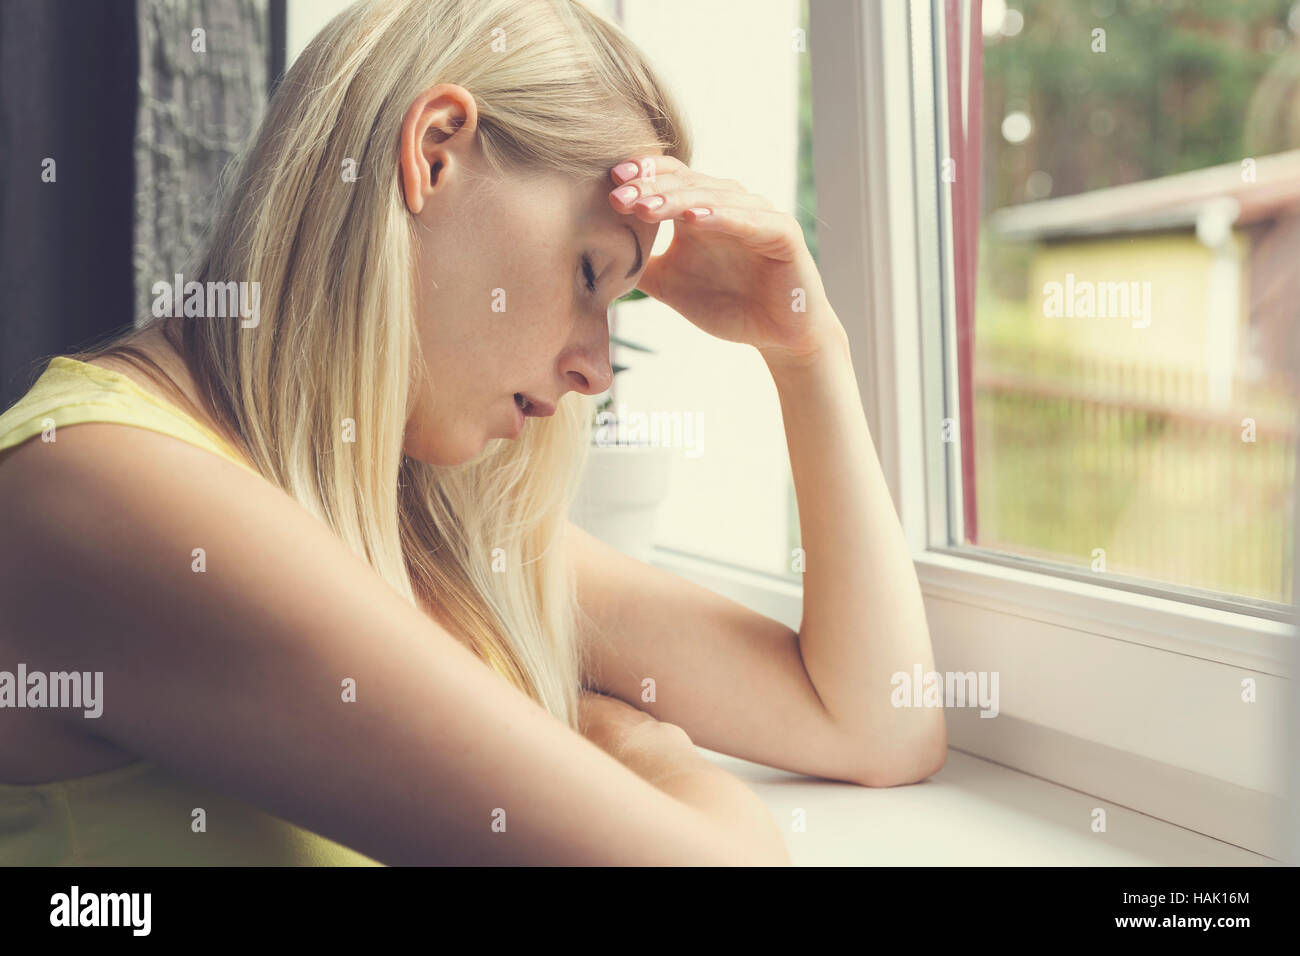 Cansado, deprimido mujer sentada por la ventana Foto de stock